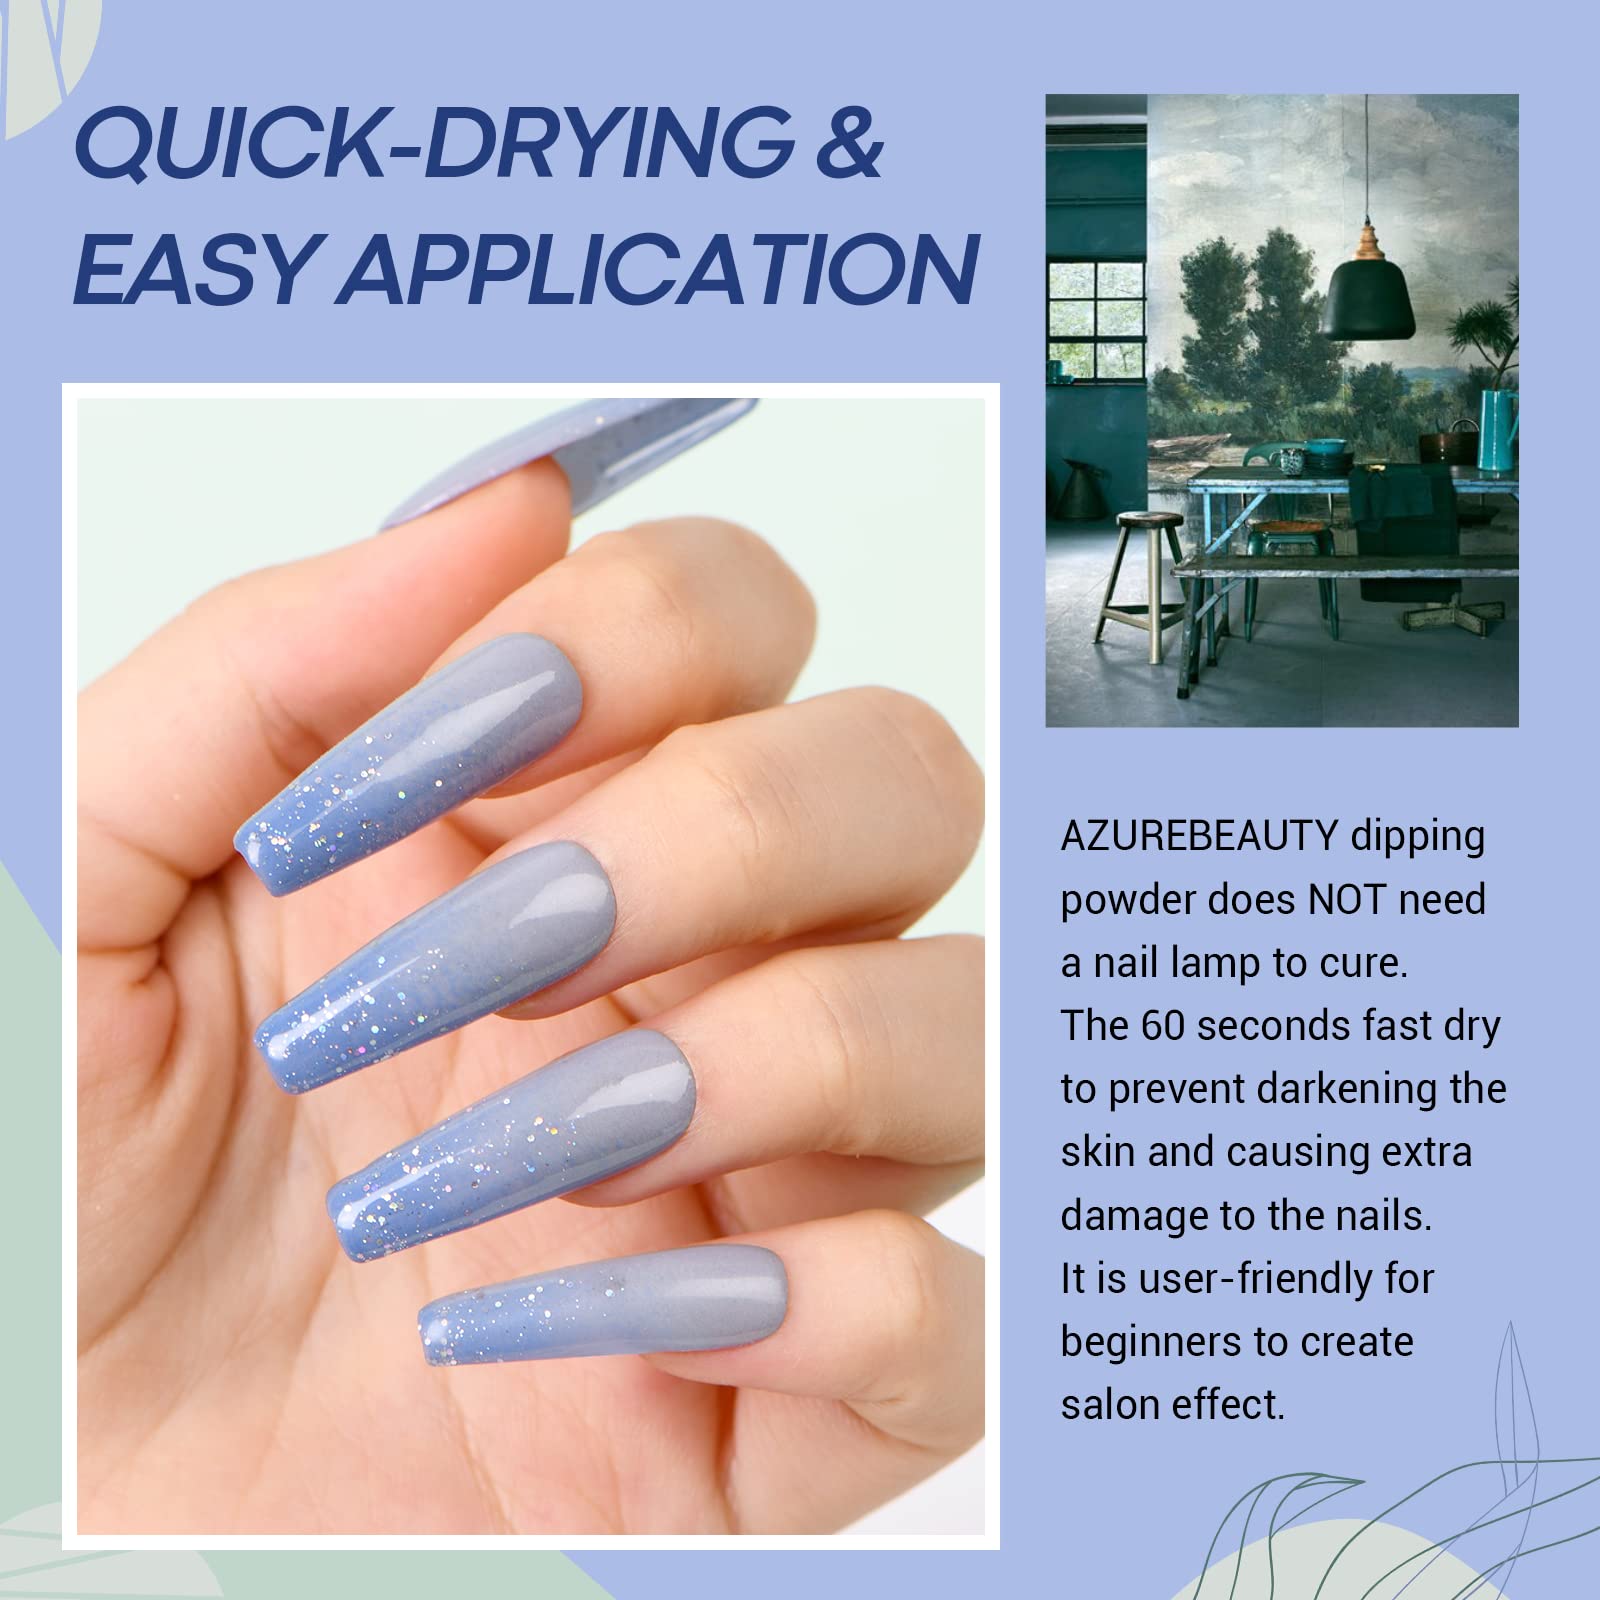 AZUREBEAUTY Dip Powder Nail Set Blue Sage Green Grey Shades, All Seasons 6 Colors Dipping Powder Starter Kit French Nail Art Man